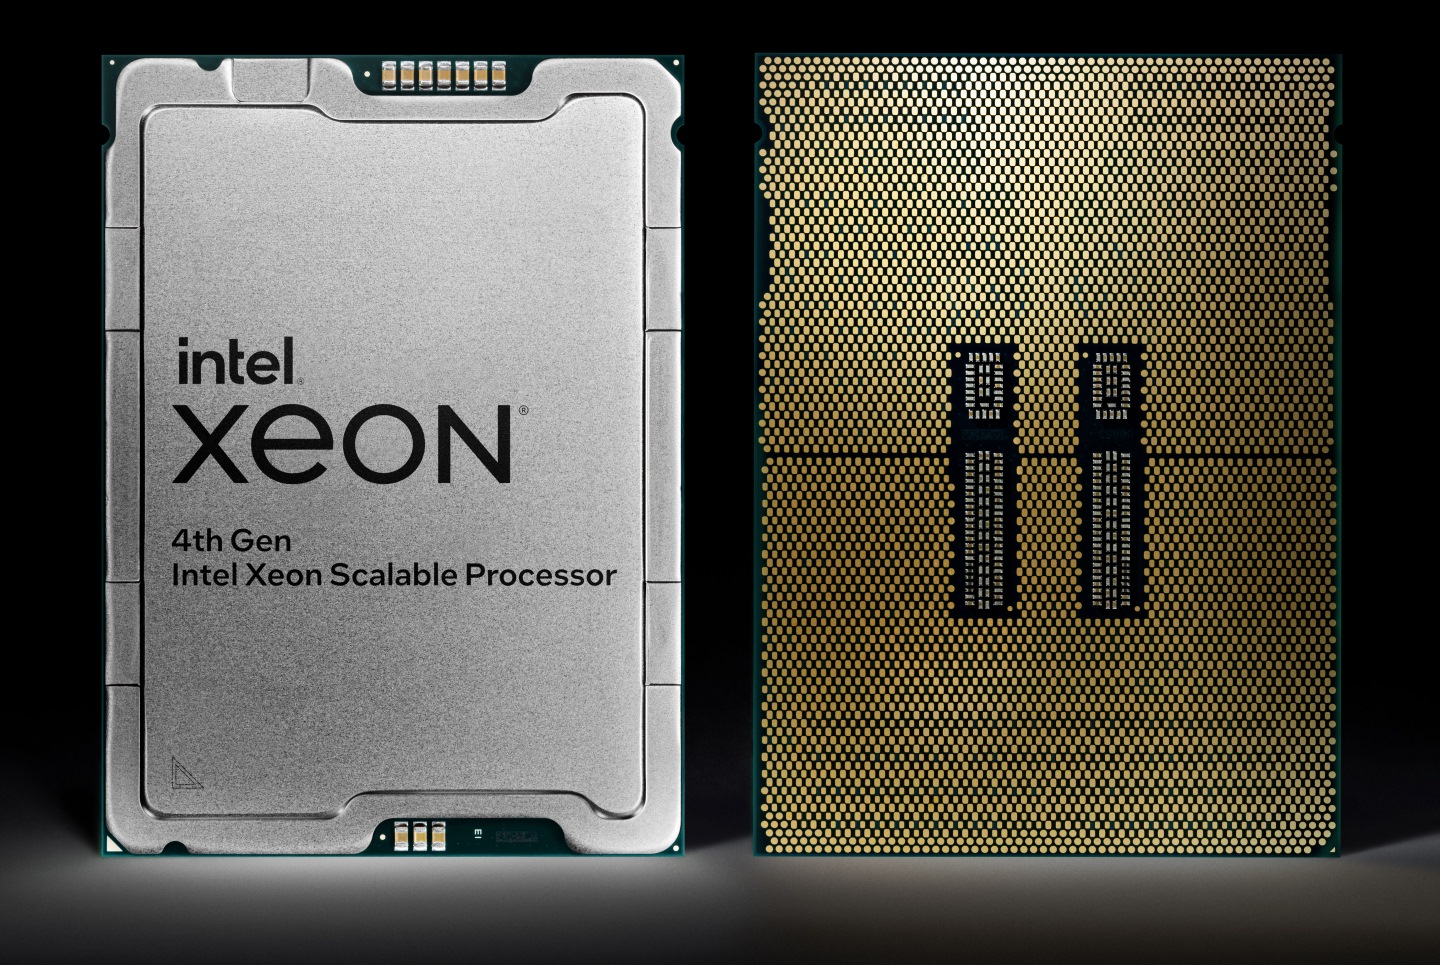 第4代Intel Xeon可擴充處理器代號為Sapphire Rapids，是Ice Lake的後續產品。